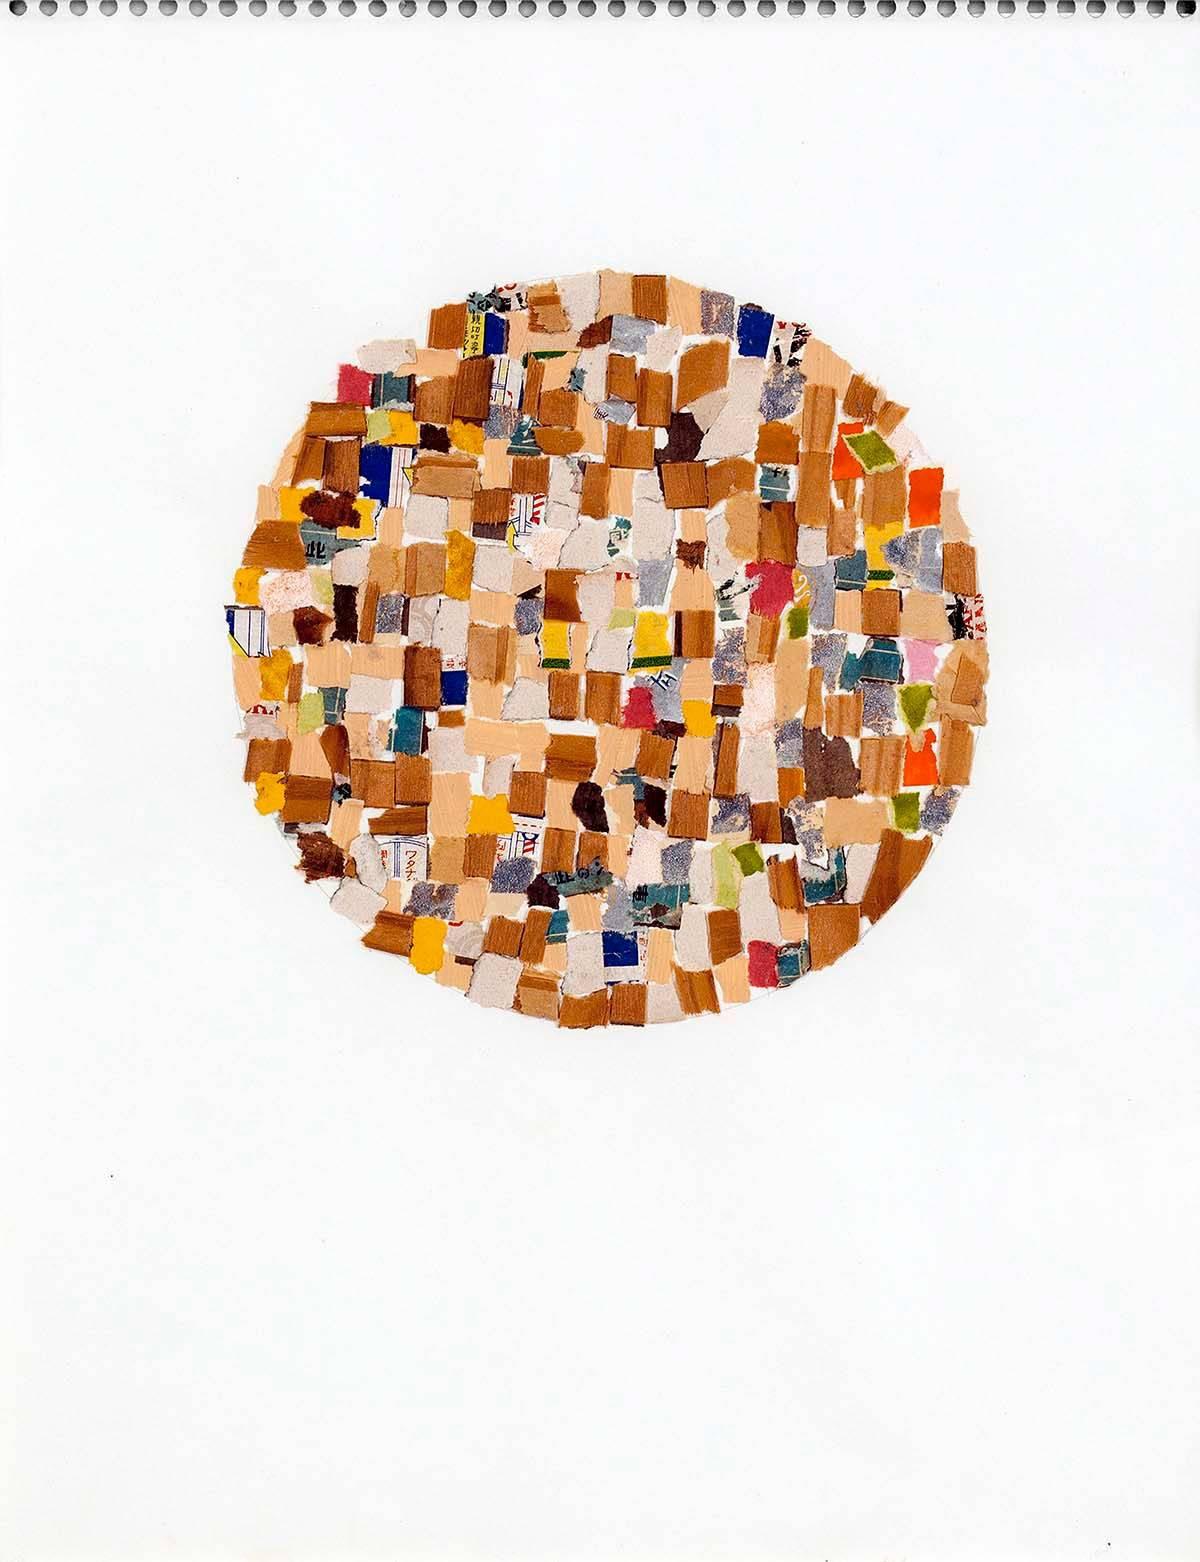 Genre: AM Contemporary
Thema: Abstrakt
Medium: Gemischte Medien, Collage
Oberfläche: Papier
Land: Spanien
Abmessungen: 14